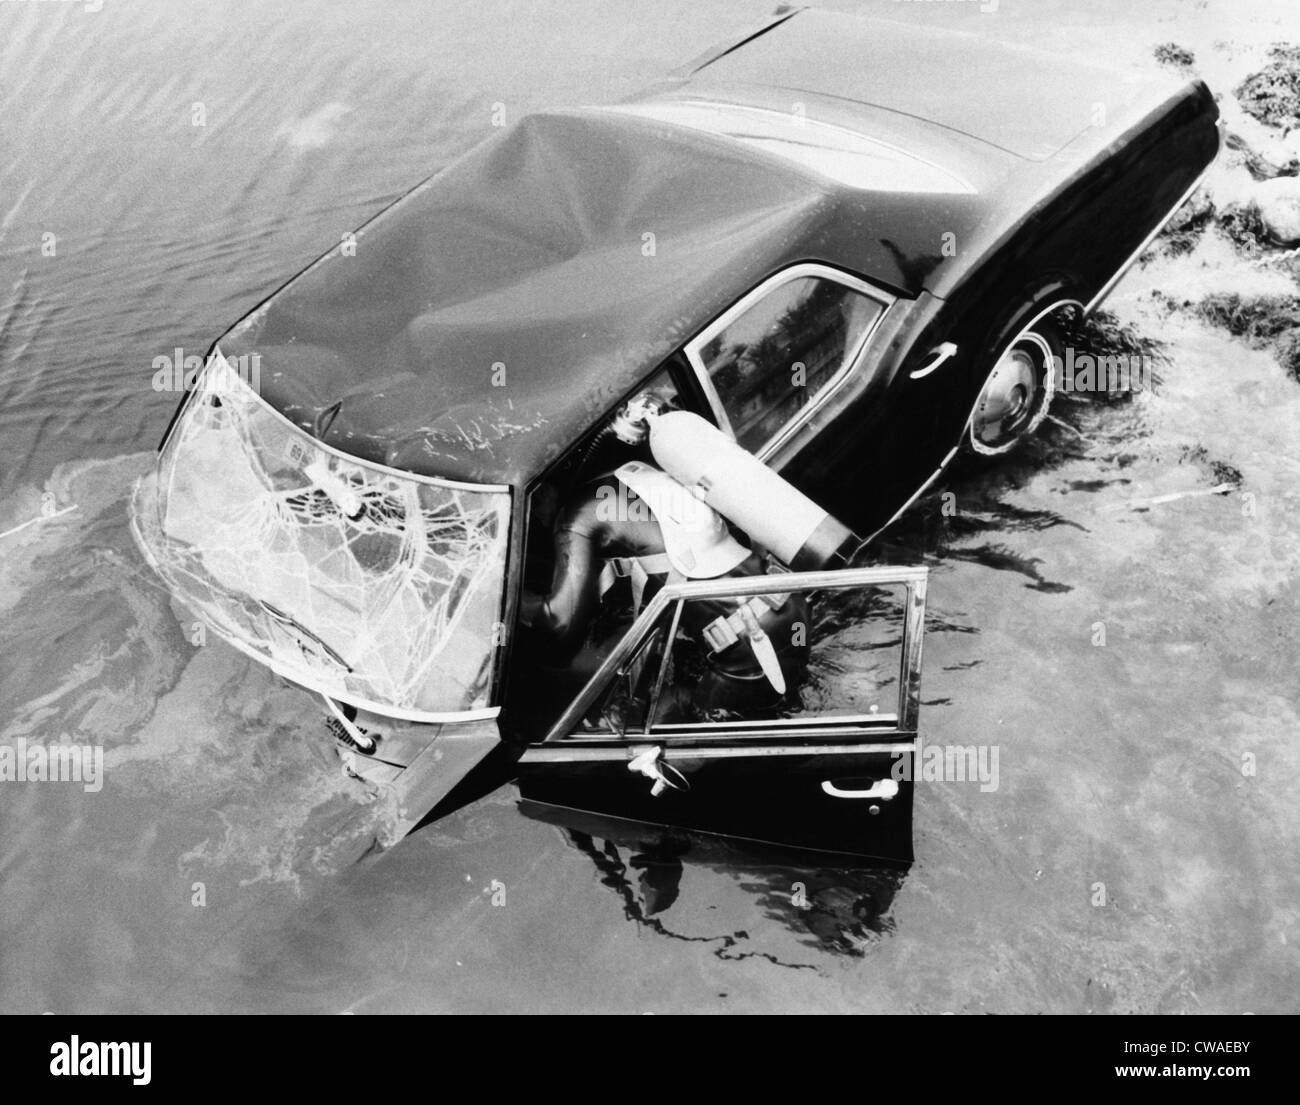 Diver investigando Edward Kennedy's 1967 Oldsmobile en Willamette River después del 18 de julio de 1969, el accidente que mató a Mary Jo Foto de stock